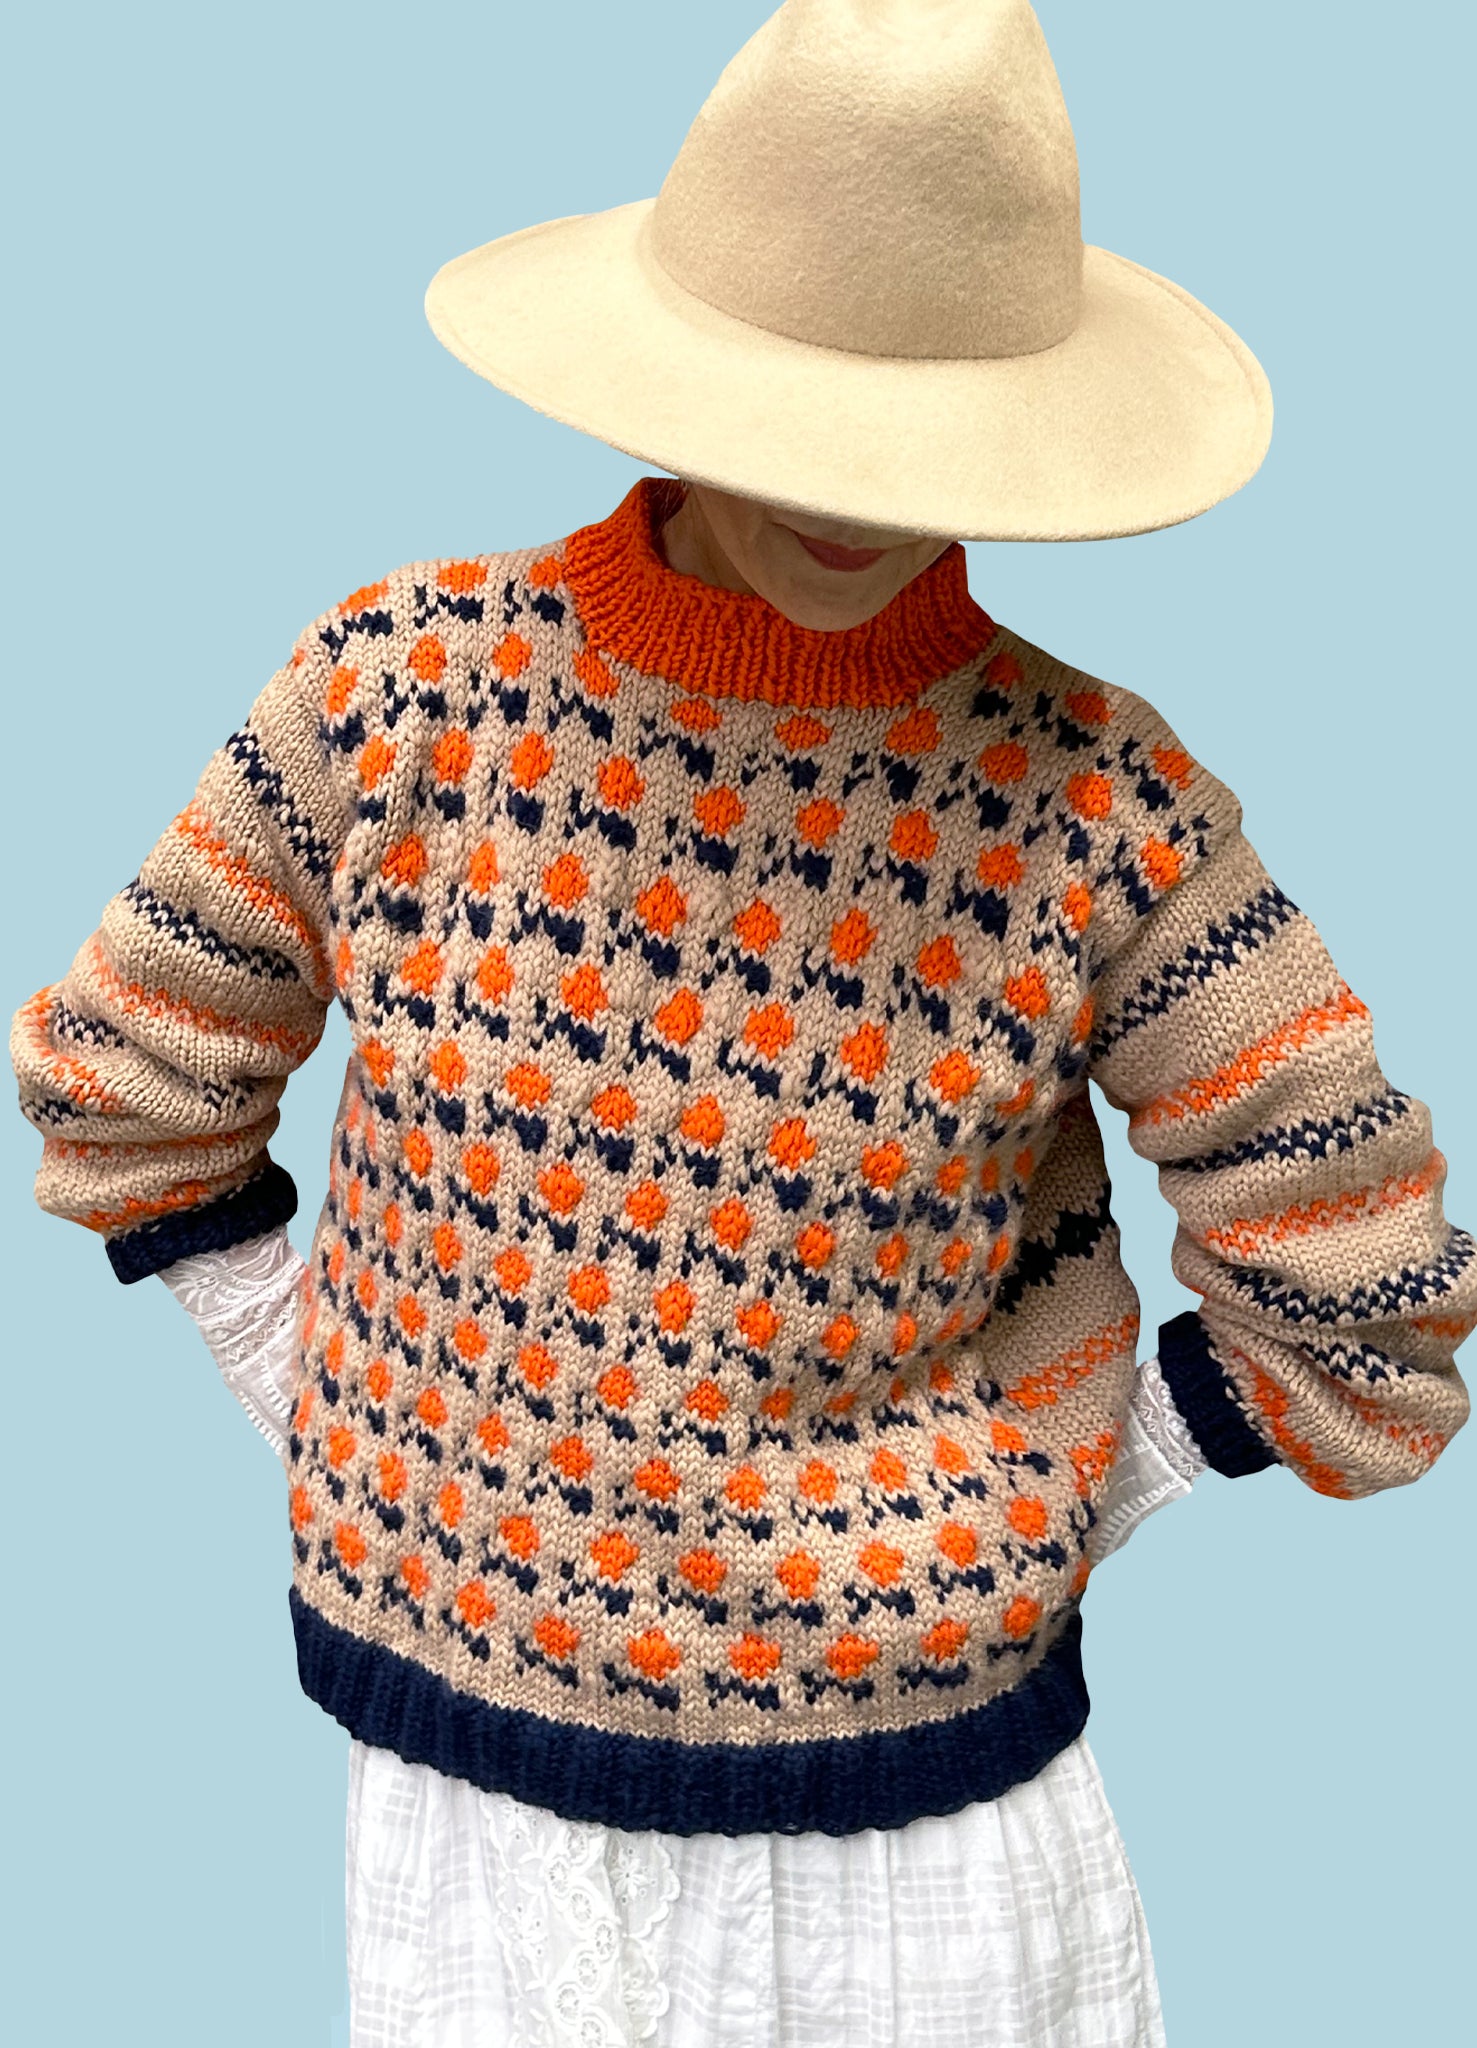 DIY Kit - Flower Garden Sweater - Dream (Merino Worsted)